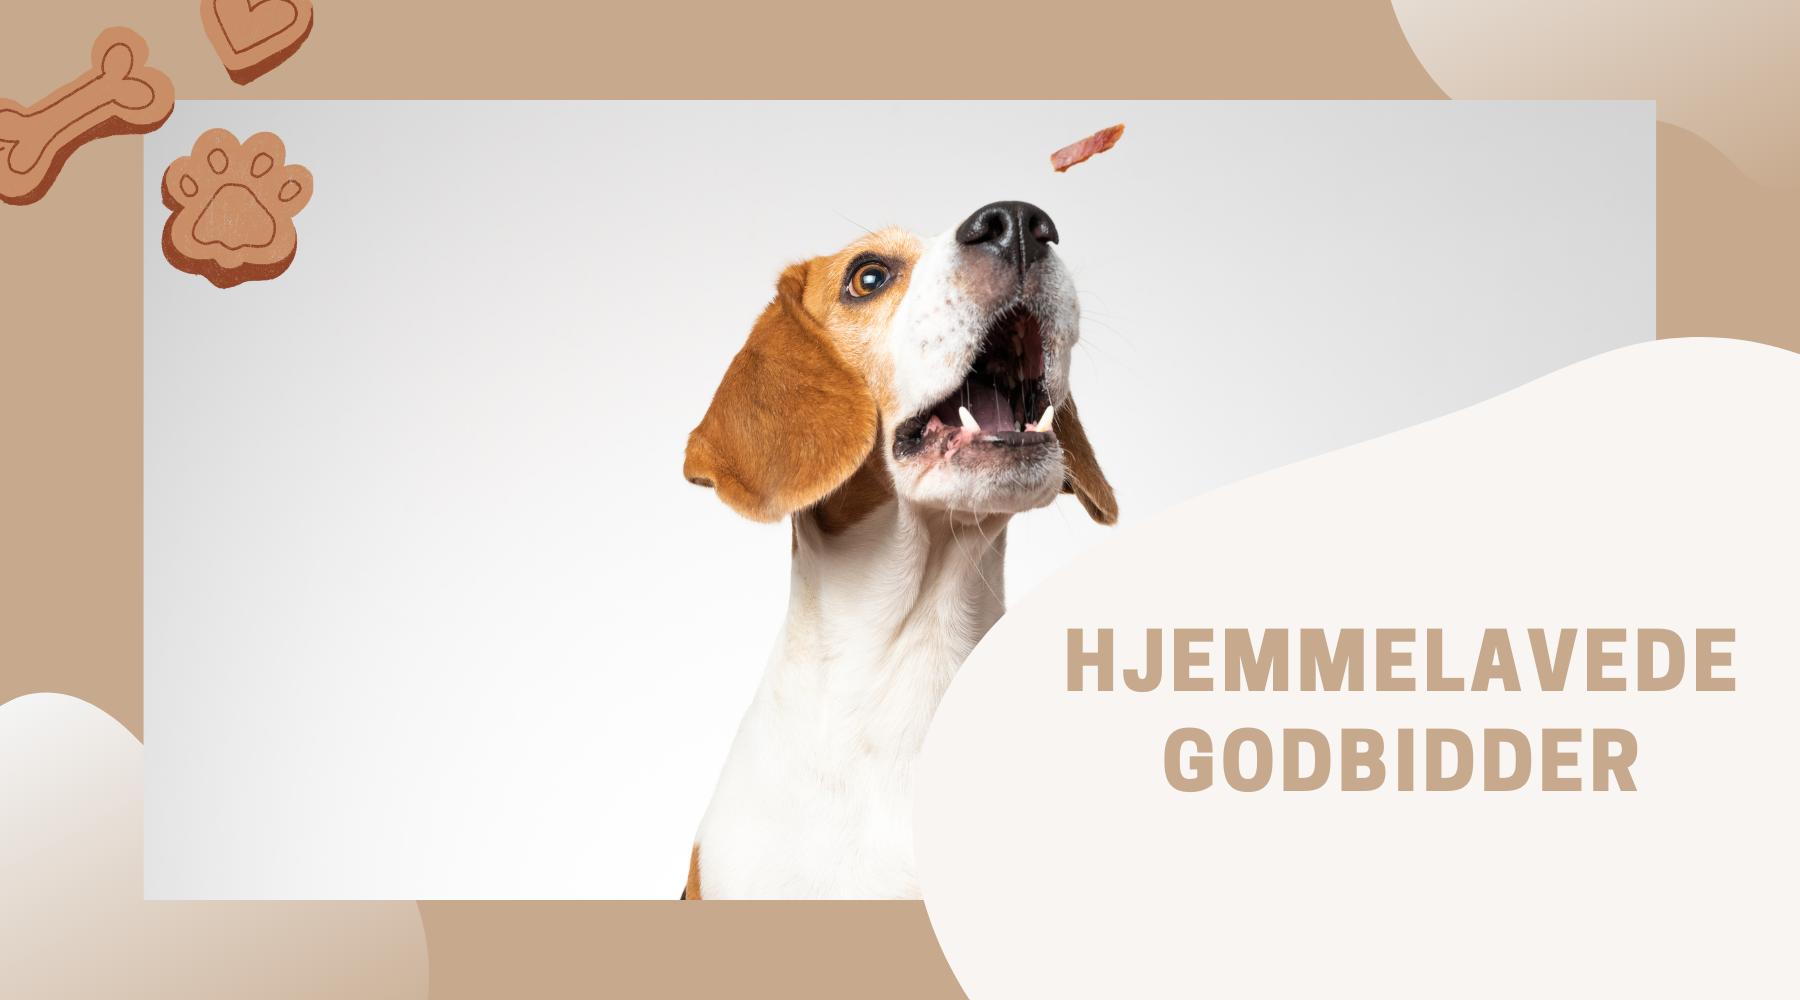 Hjemmelavede Godbidder hunde: Sundt, lækkert og opskrifter –